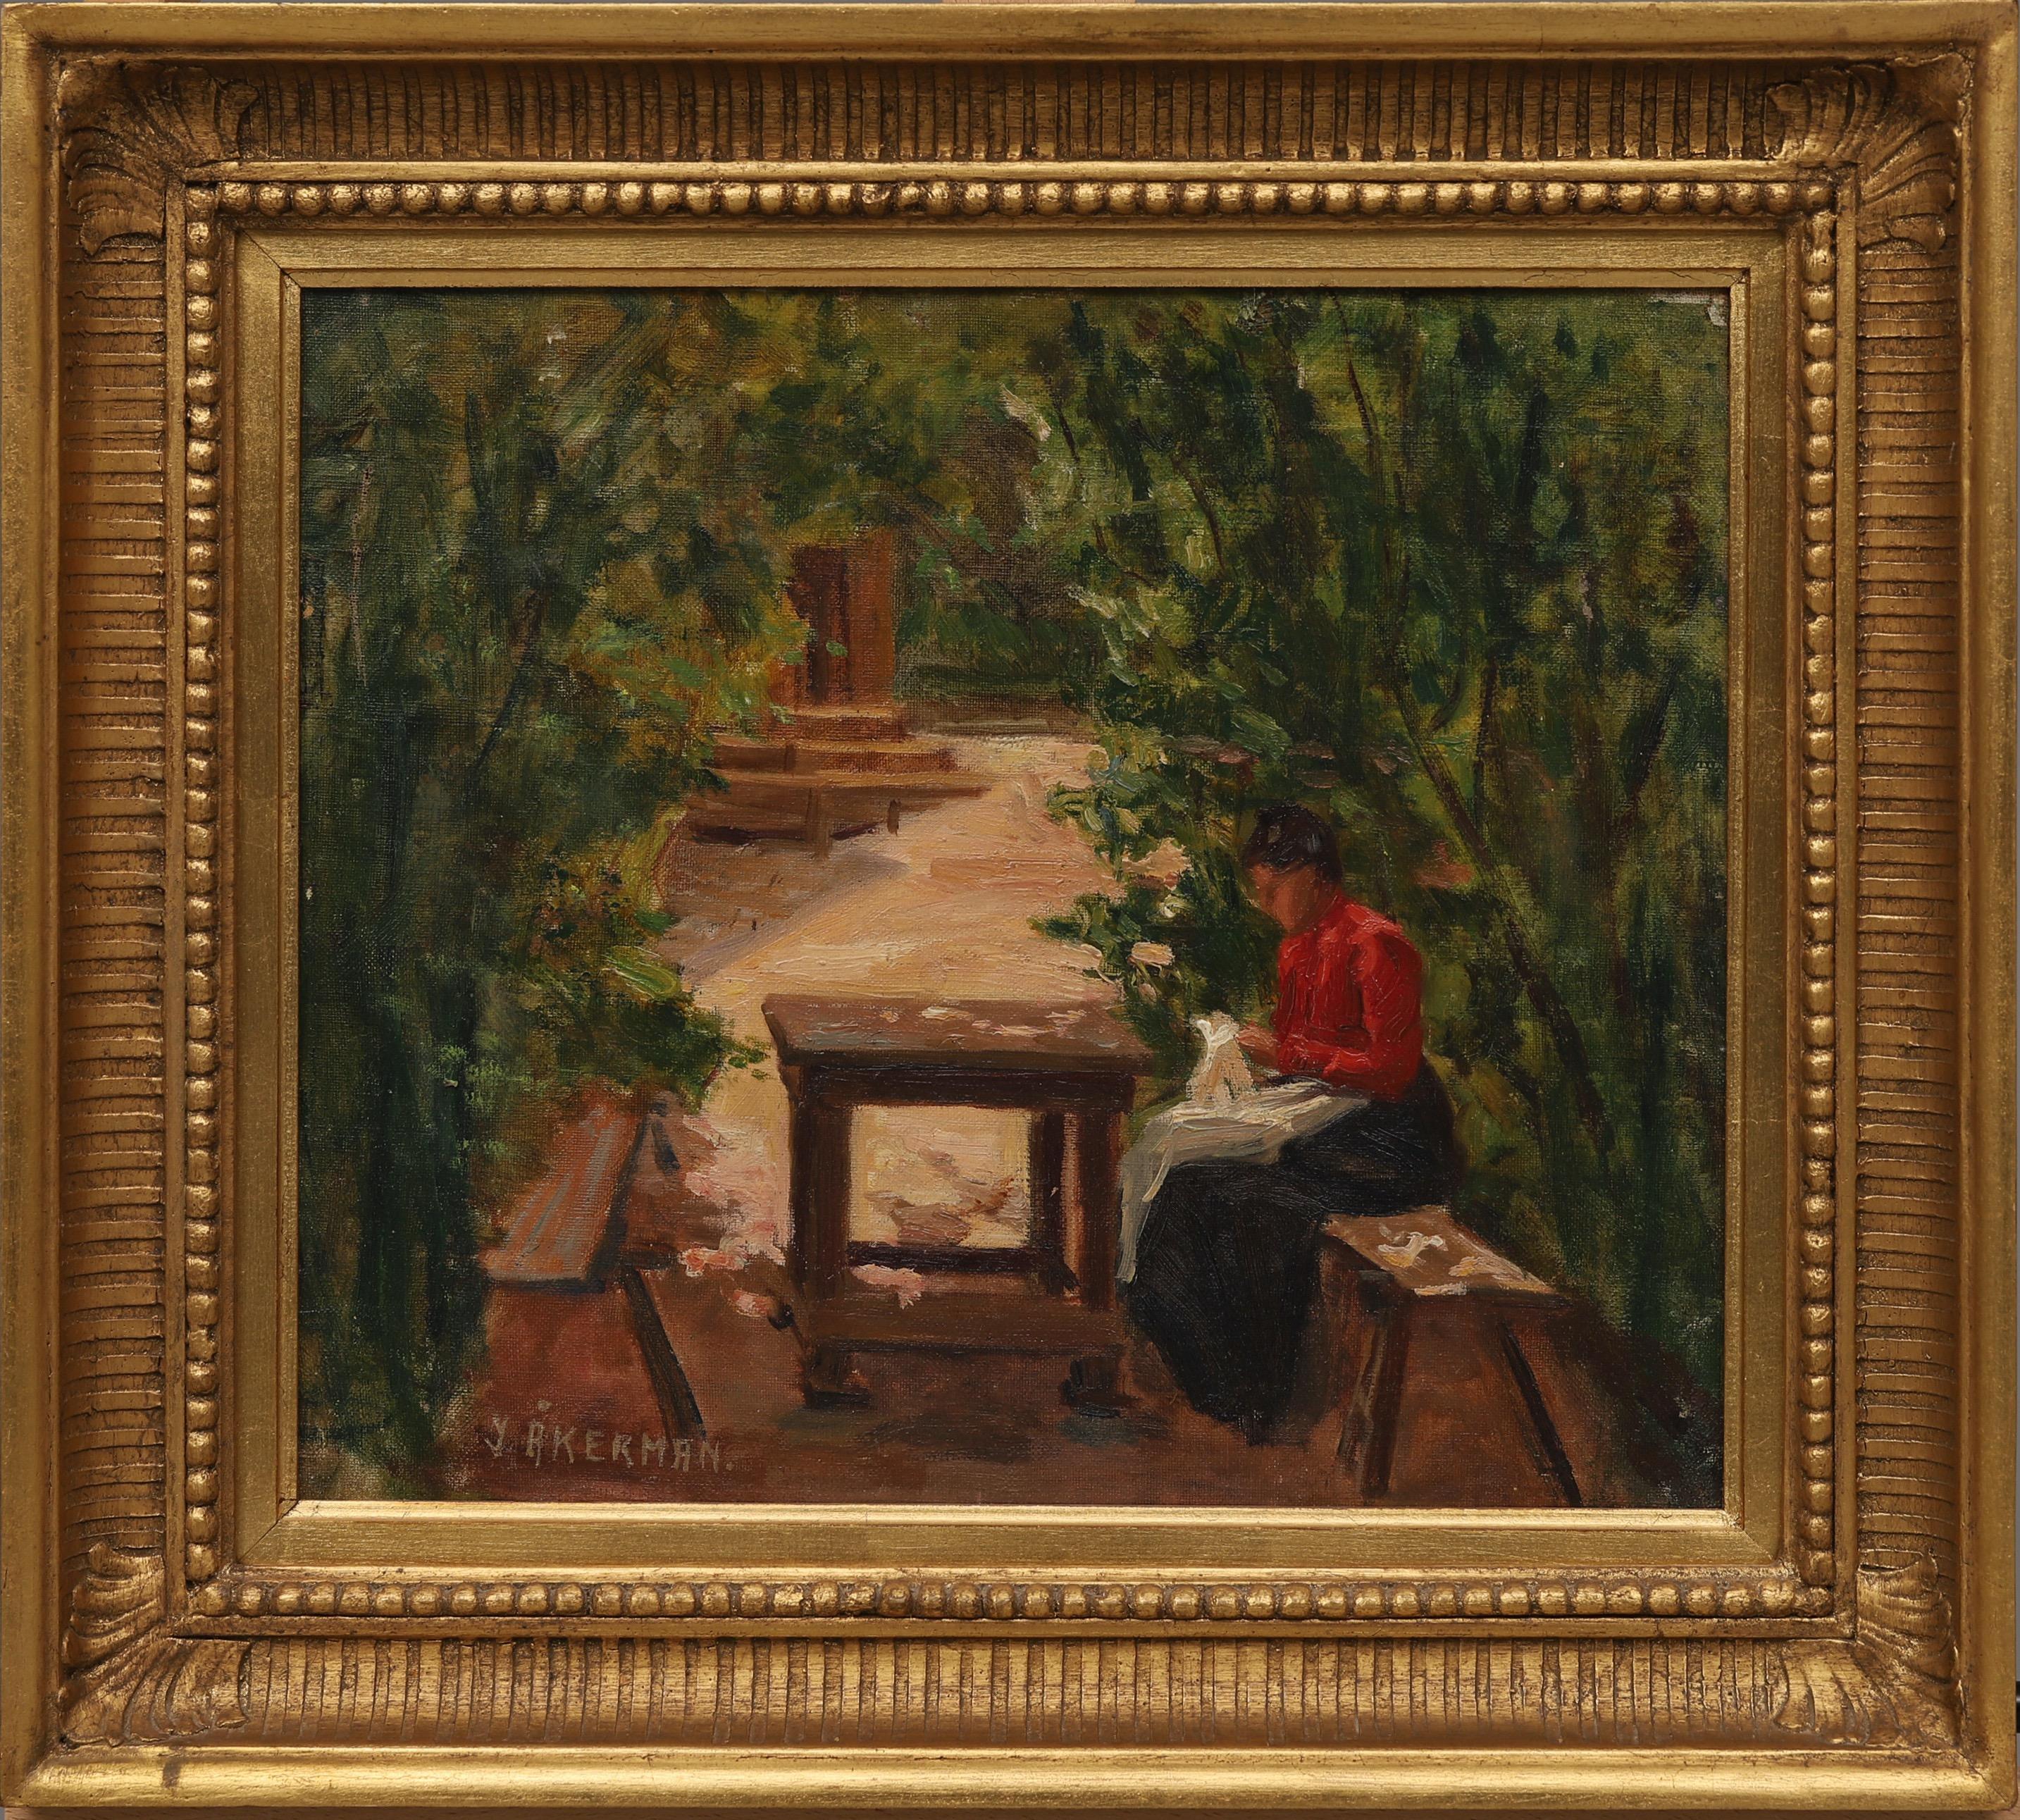 Un motif magnifiquement peint par l'artiste féminine Ingeborg Åkerman (1881-1960) représentant une femme assise dans son jardin, à l'ombre de la tonnelle où elle coud. Elle a probablement été peinte au début des années 1900, alors qu'elle venait de